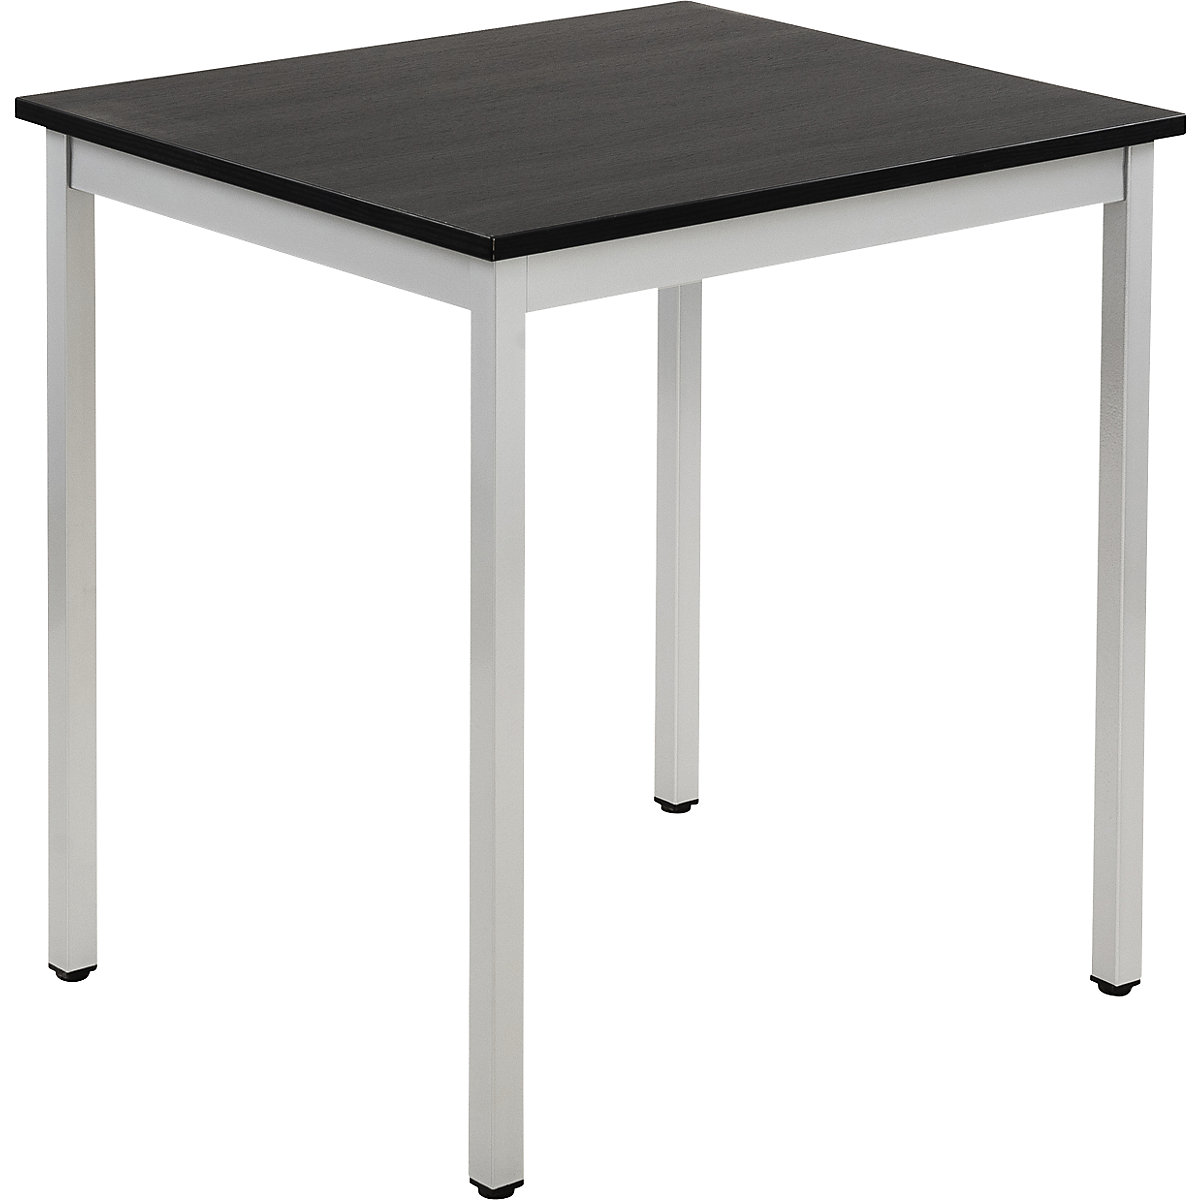 Table polyvalente – eurokraft basic, rectangulaire, h x l x p 740 x 700 x 600 mm, plateau façon frêne gris foncé, piétement aluminium-15